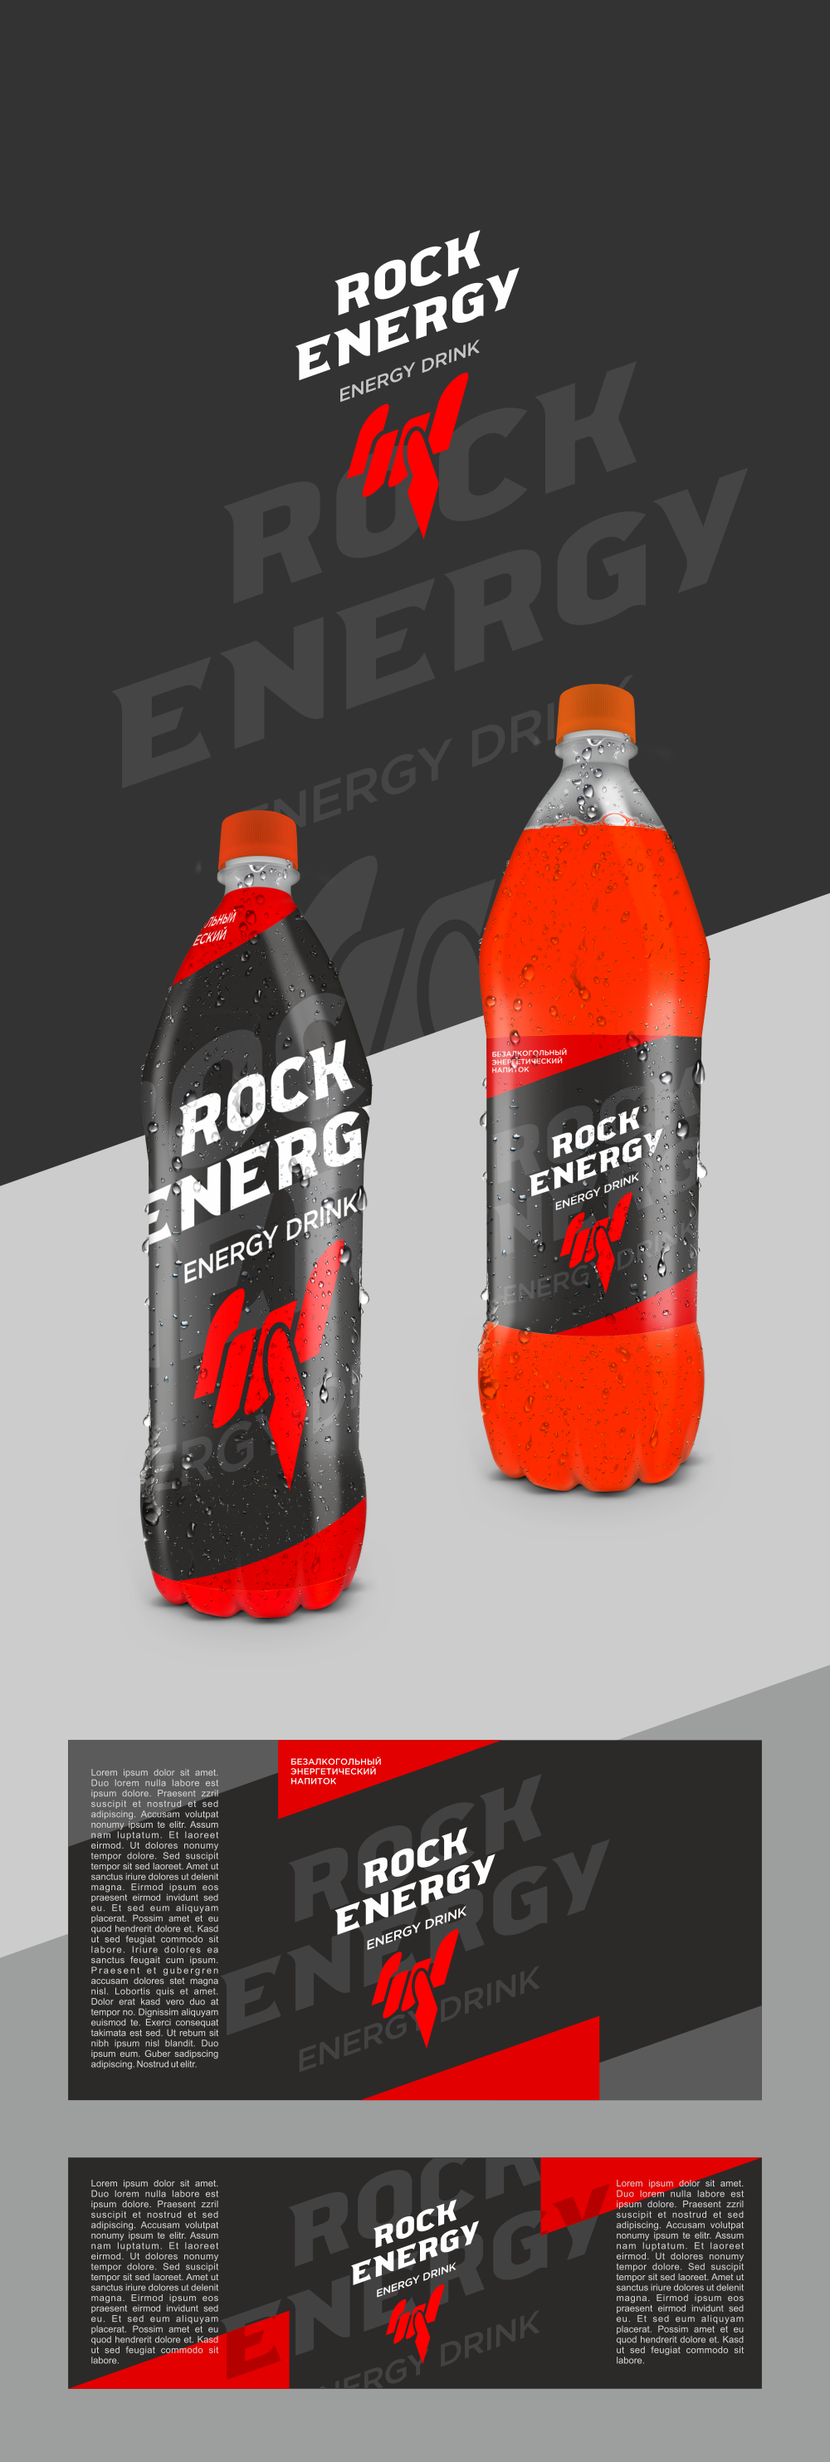 Rock energy Создать логотип и 2 этикетки для энергетического напитка